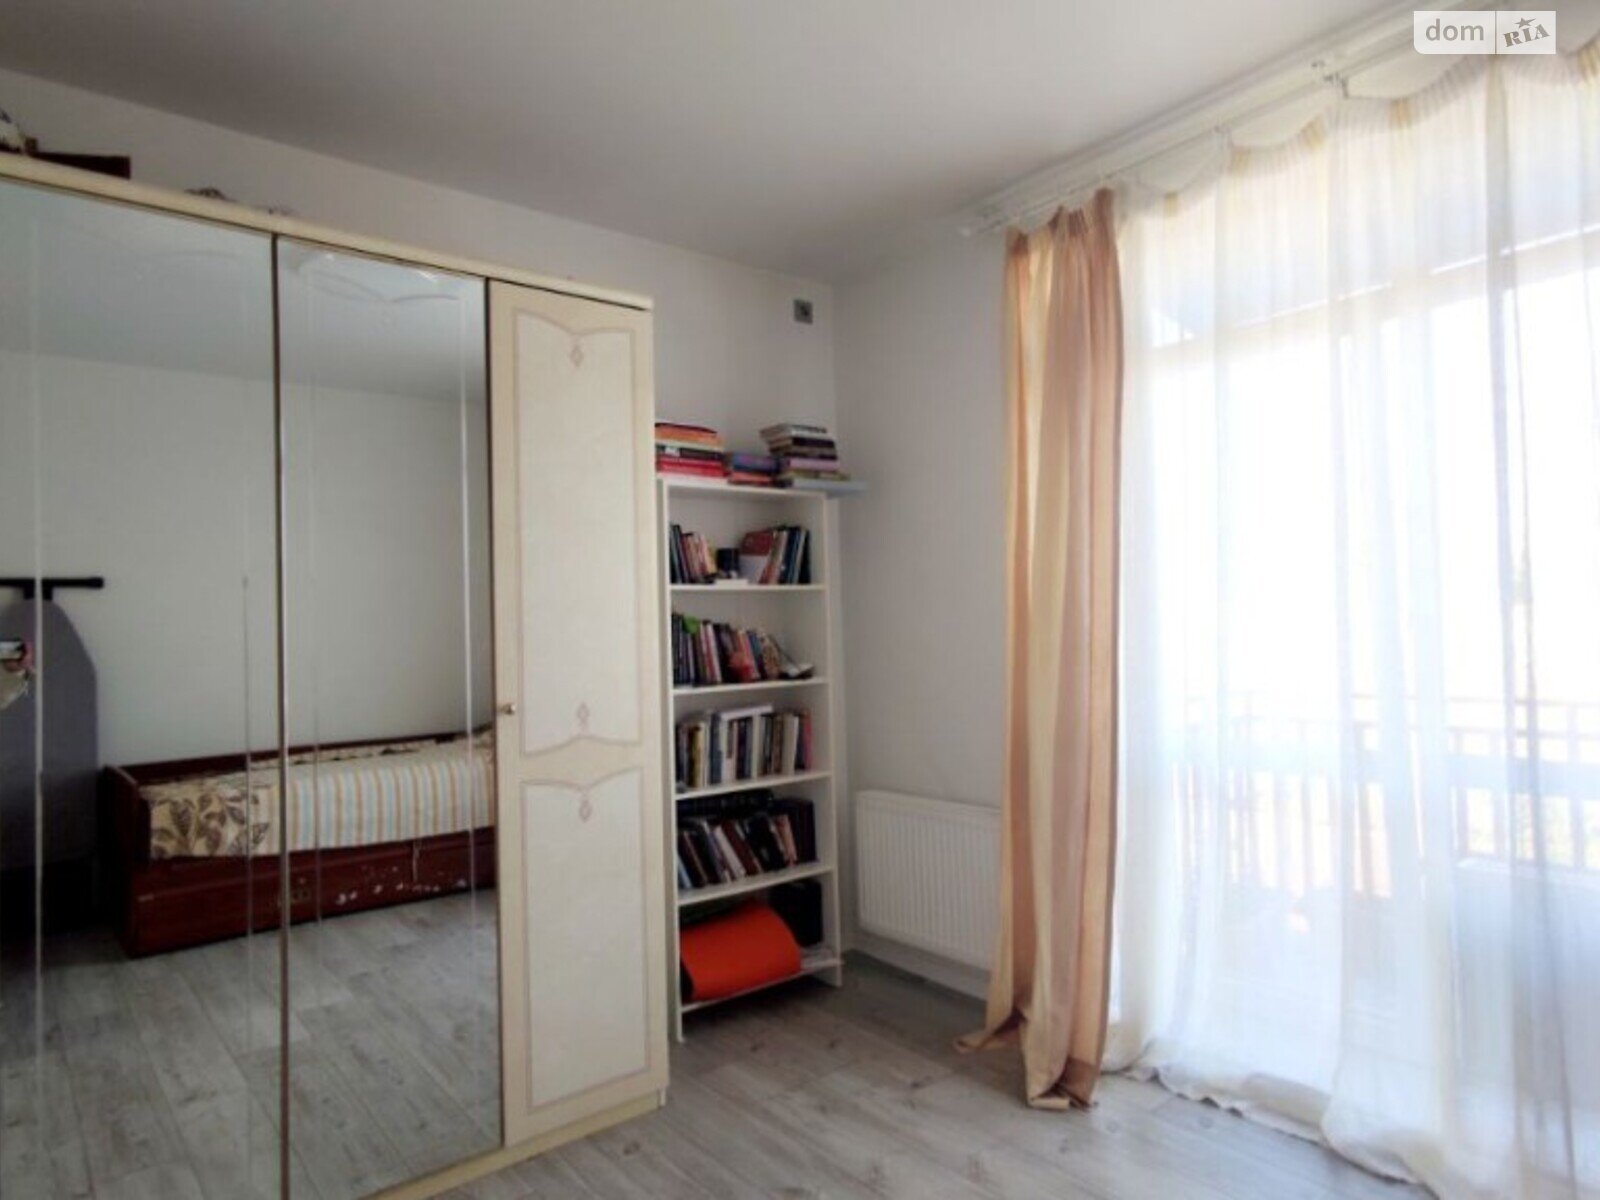 Продаж частини будинку в Ходосівці, Новообухівське шосе 1, 4 кімнати фото 1